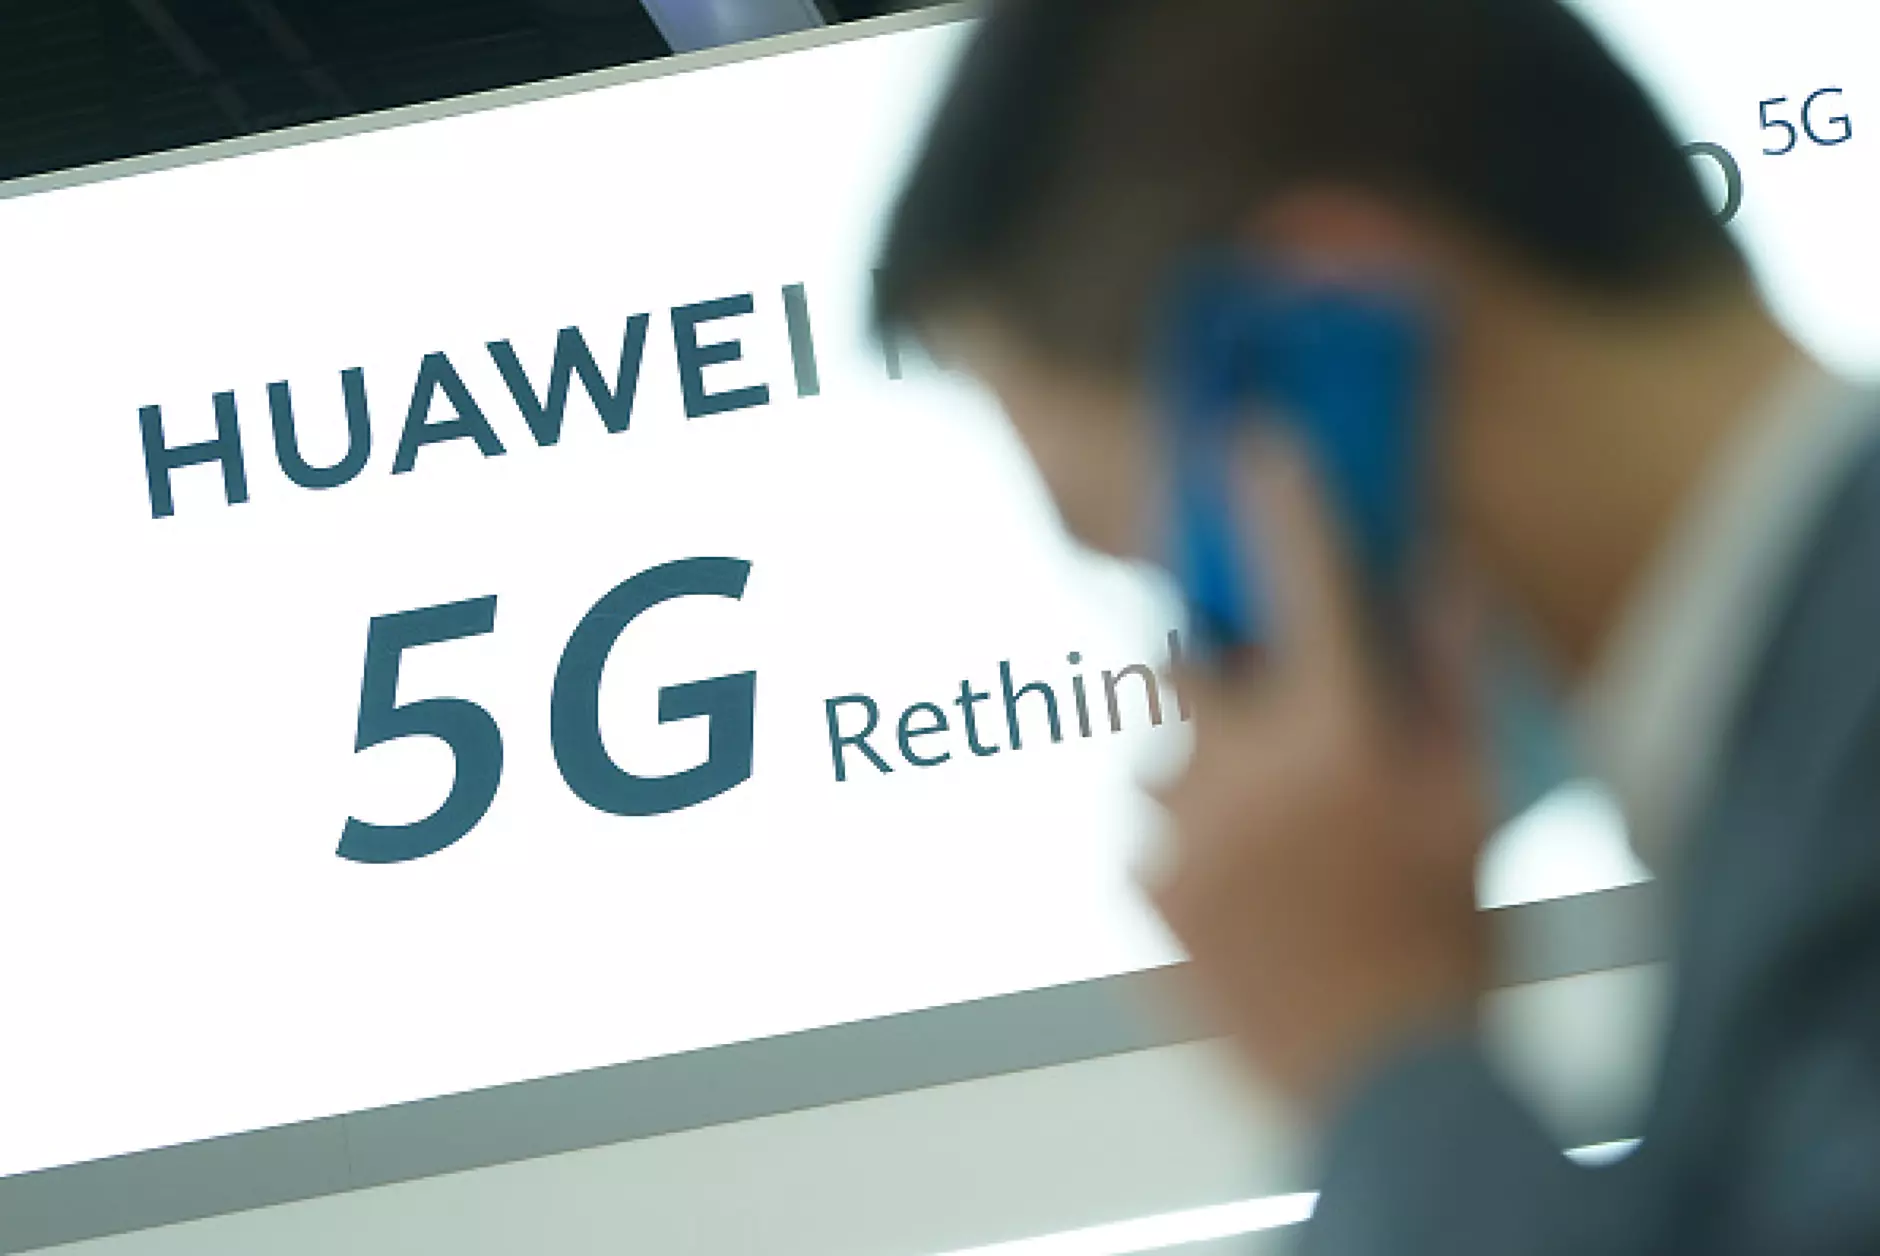 Huawei чупи орехи с новия си смартфон във видео тест